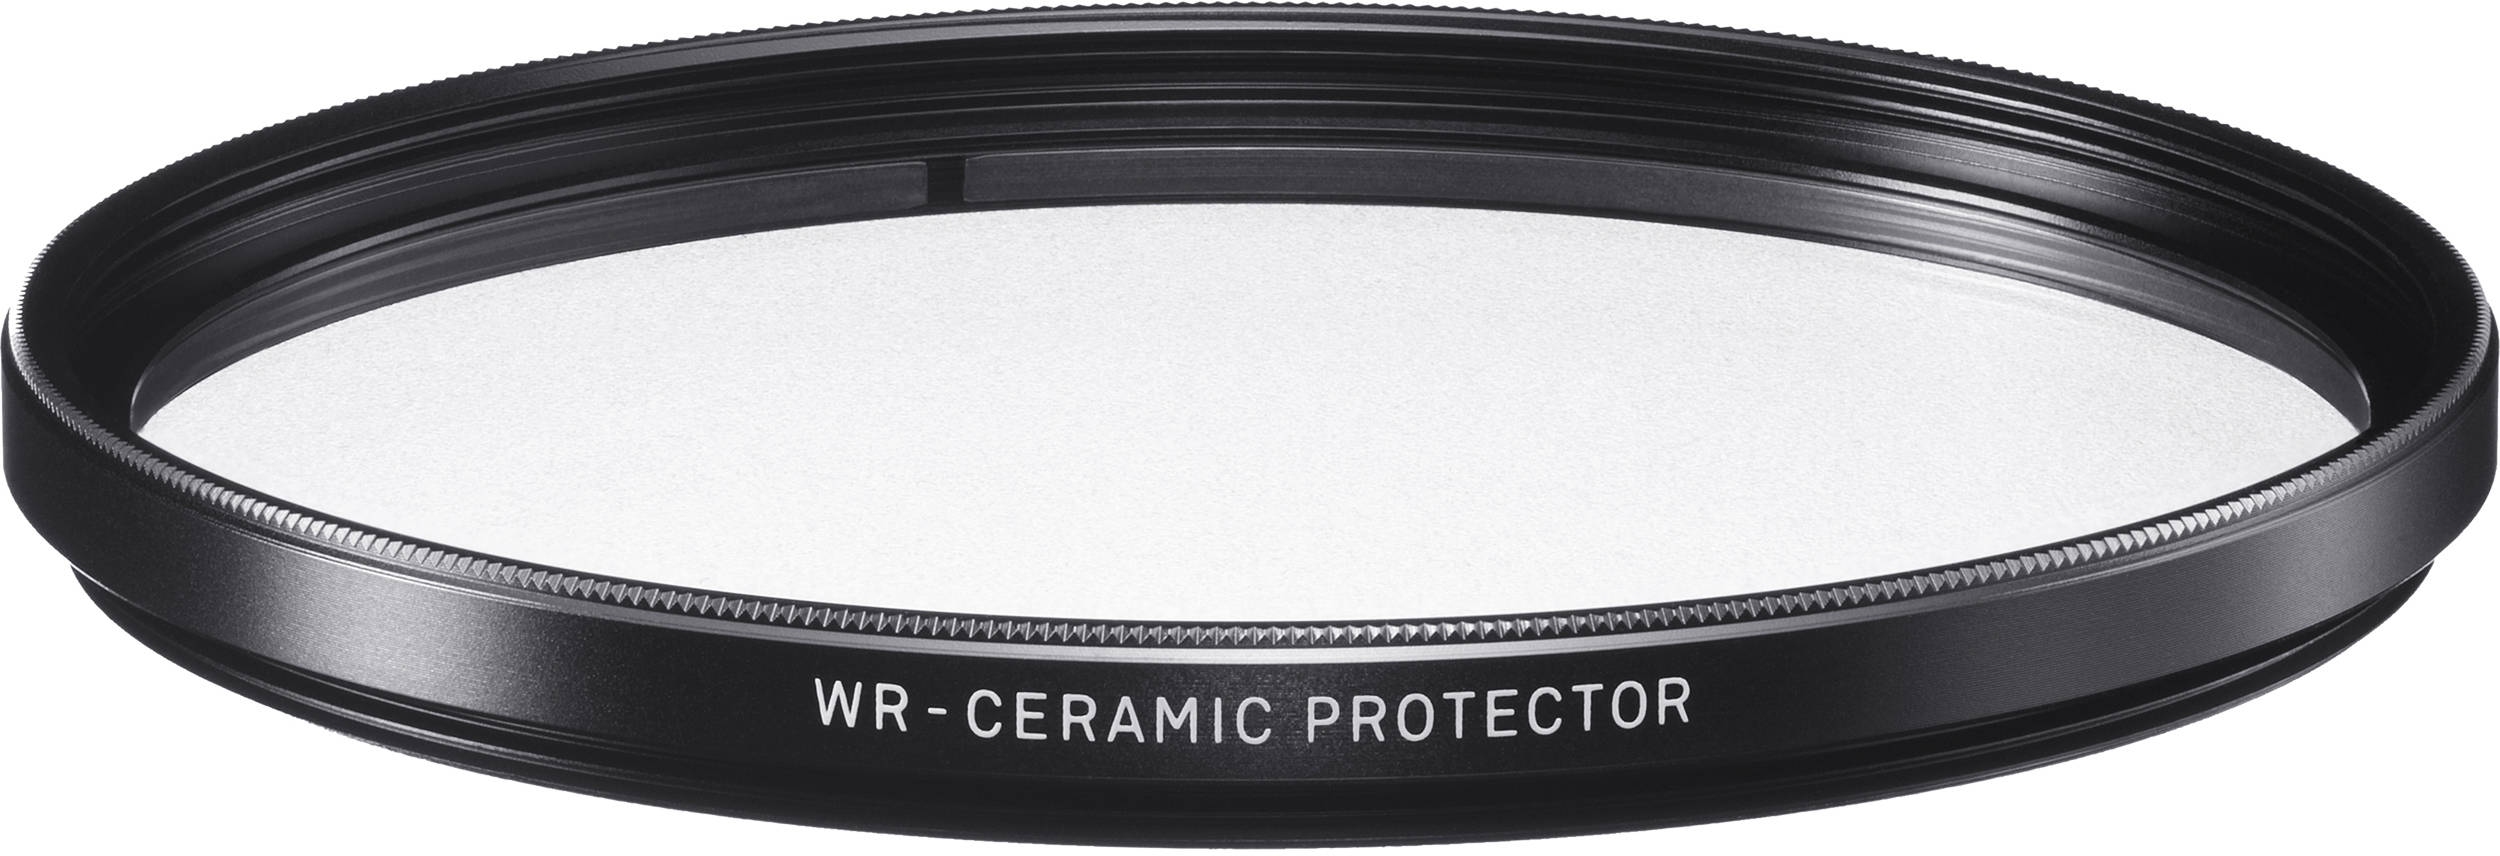 Светофильтр Sigma WR CPL 82mm. ND фильтры вкладыши Sigma 105mm. Защитный фильтр для объектива. Прозрачный защитный фильтр. Сигма фильтр